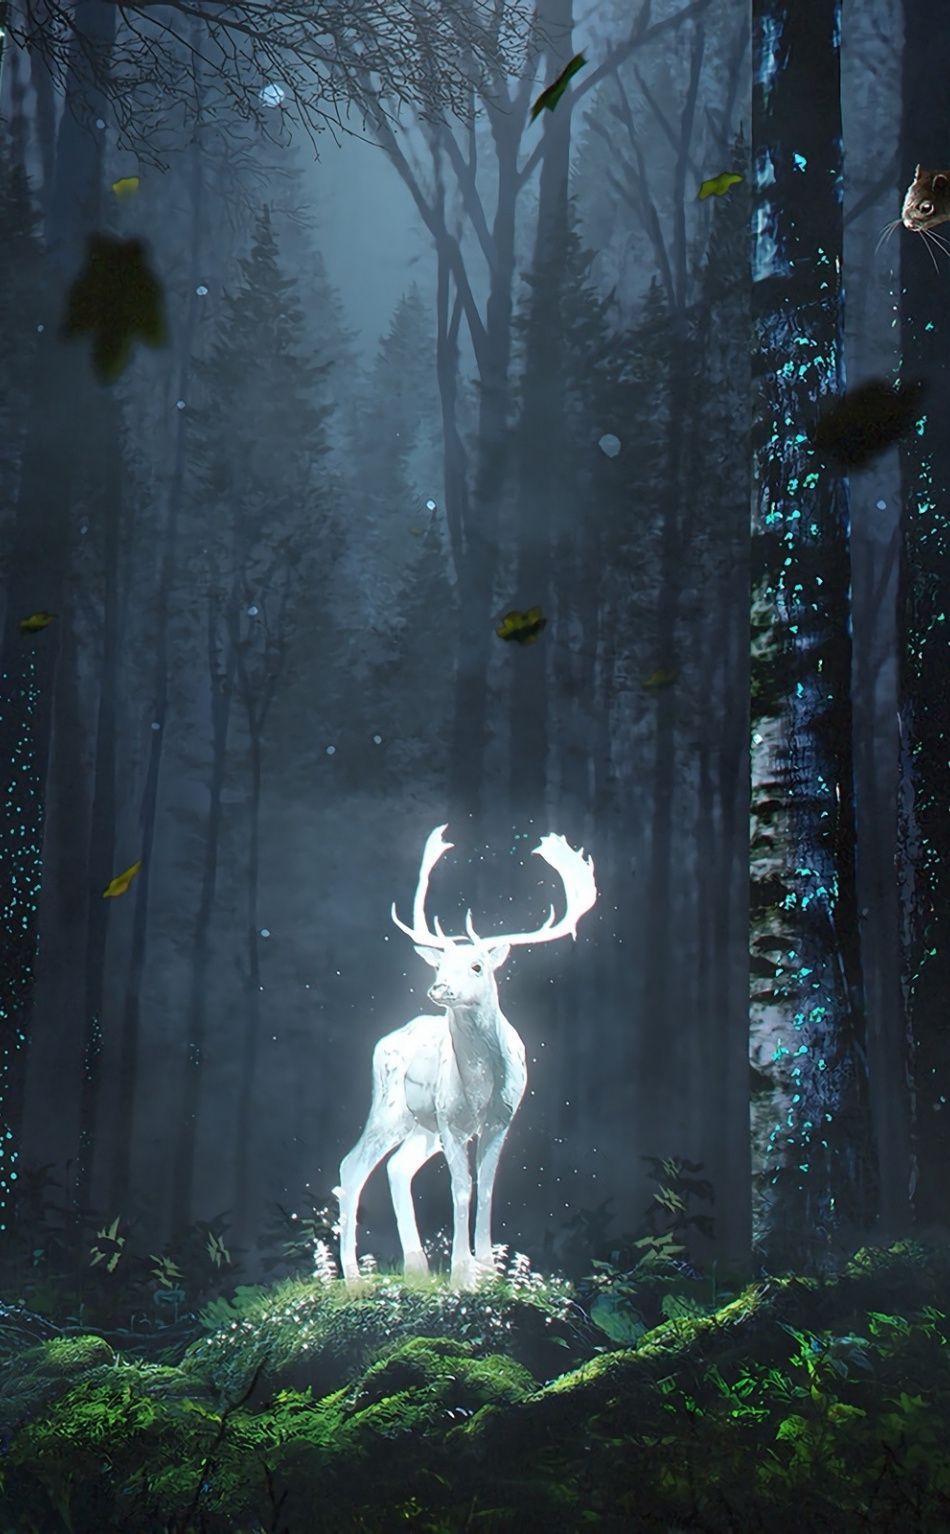 Forest, wild deer, glow, fantasy, art, 950x1534 wallpaper. Arte de criaturas míticas, Cráneos pintados, Bosque místico